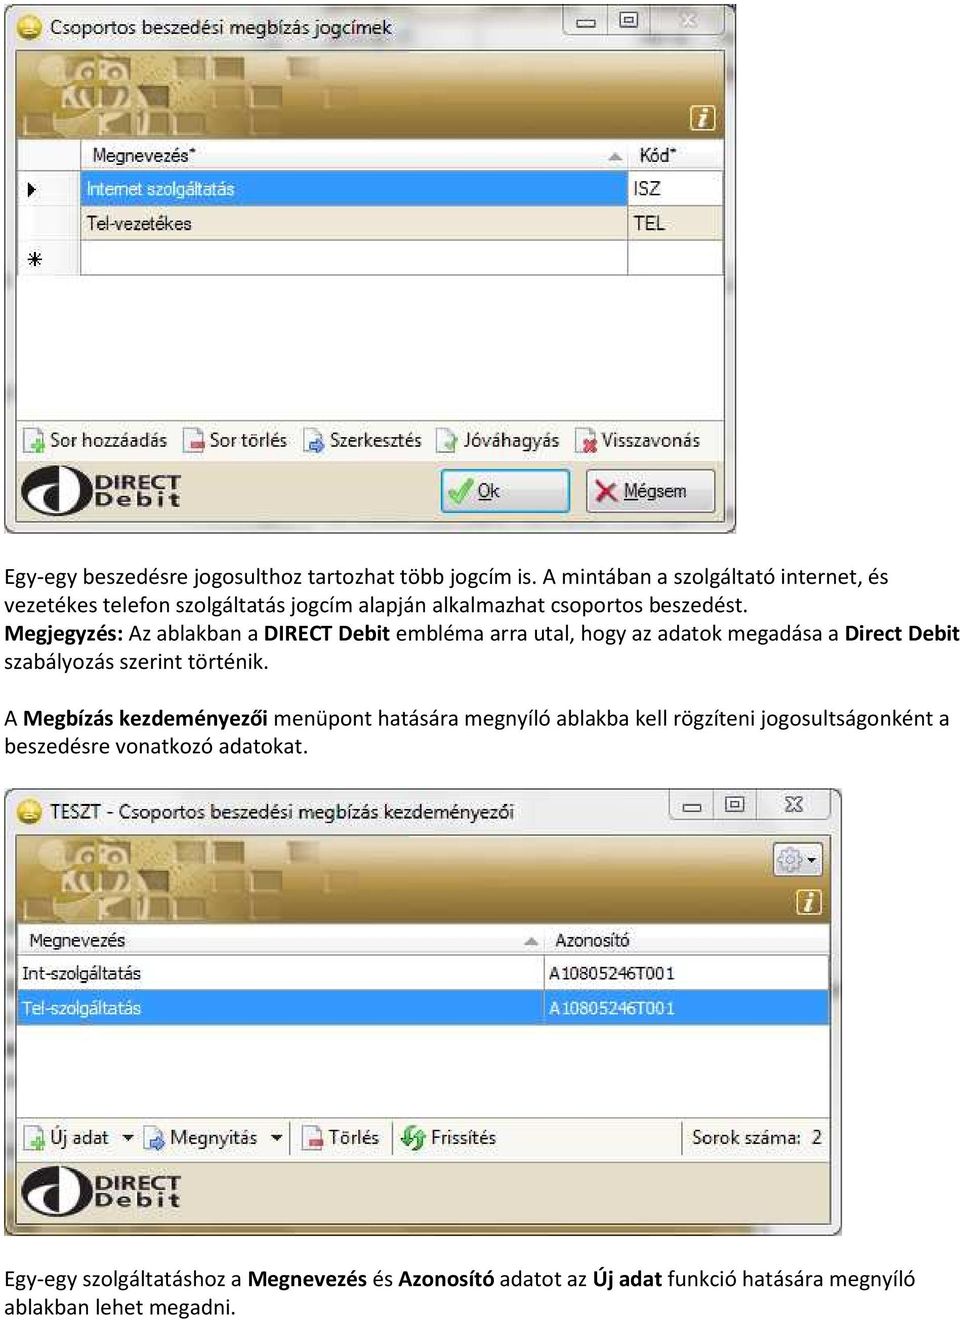 Megjegyzés: Az ablakban a DIRECT Debit embléma arra utal, hogy az adatok megadása a Direct Debit szabályozás szerint történik.